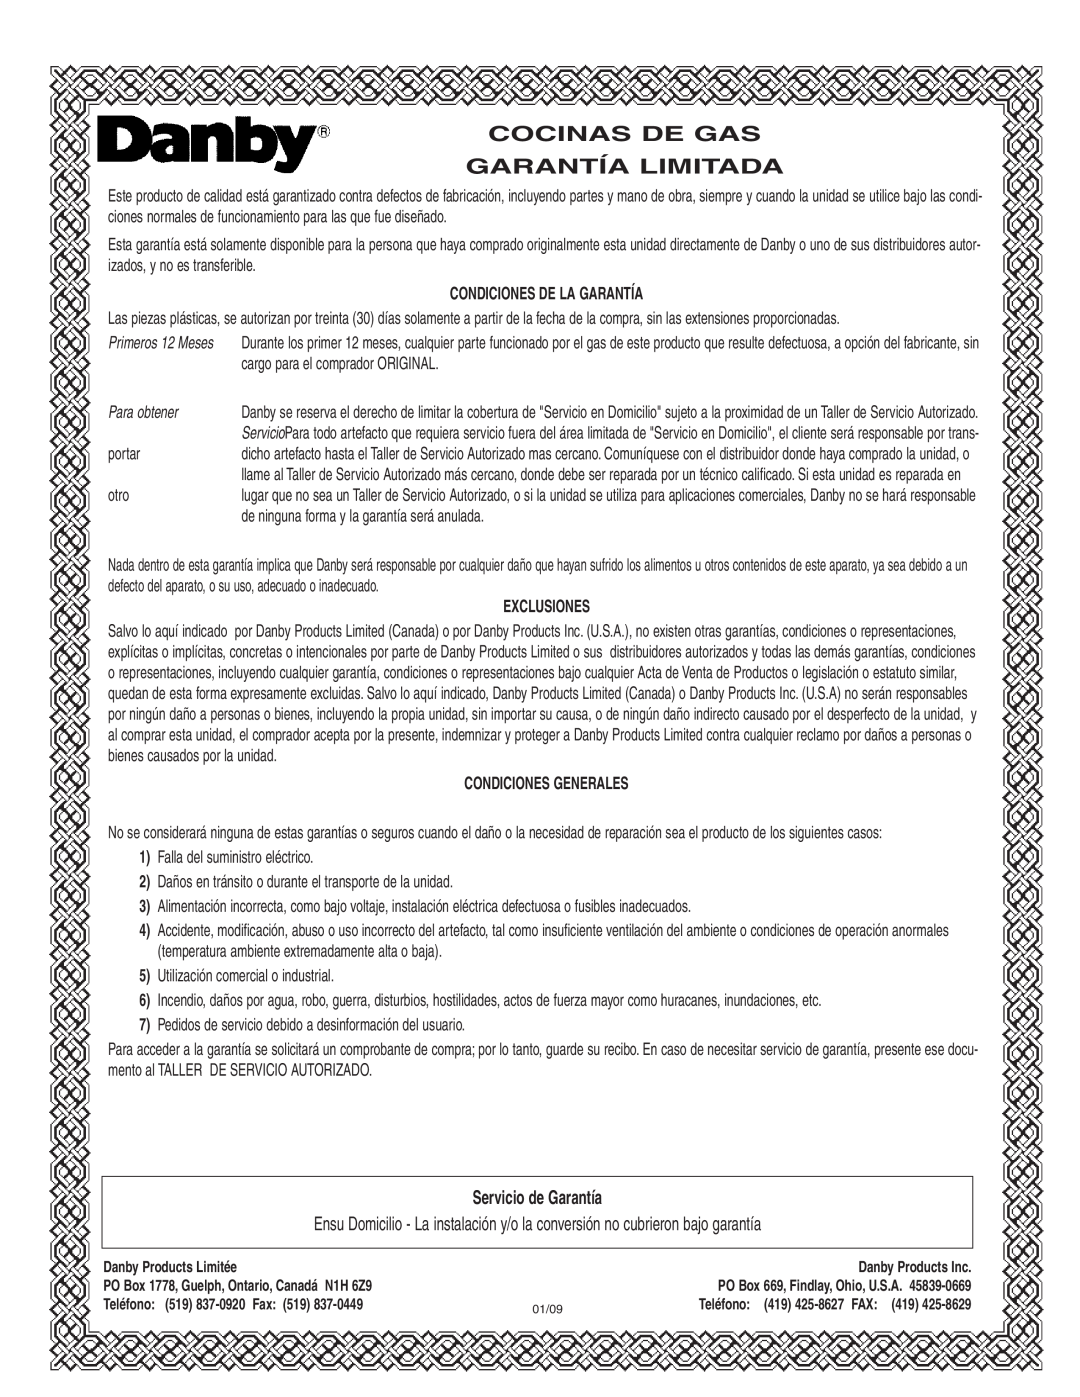 Danby DR2099WGLP Cocinas De Gas Garantía Limitada, Servicio de Garantía, Condiciones De La Garantía, Para obtener 